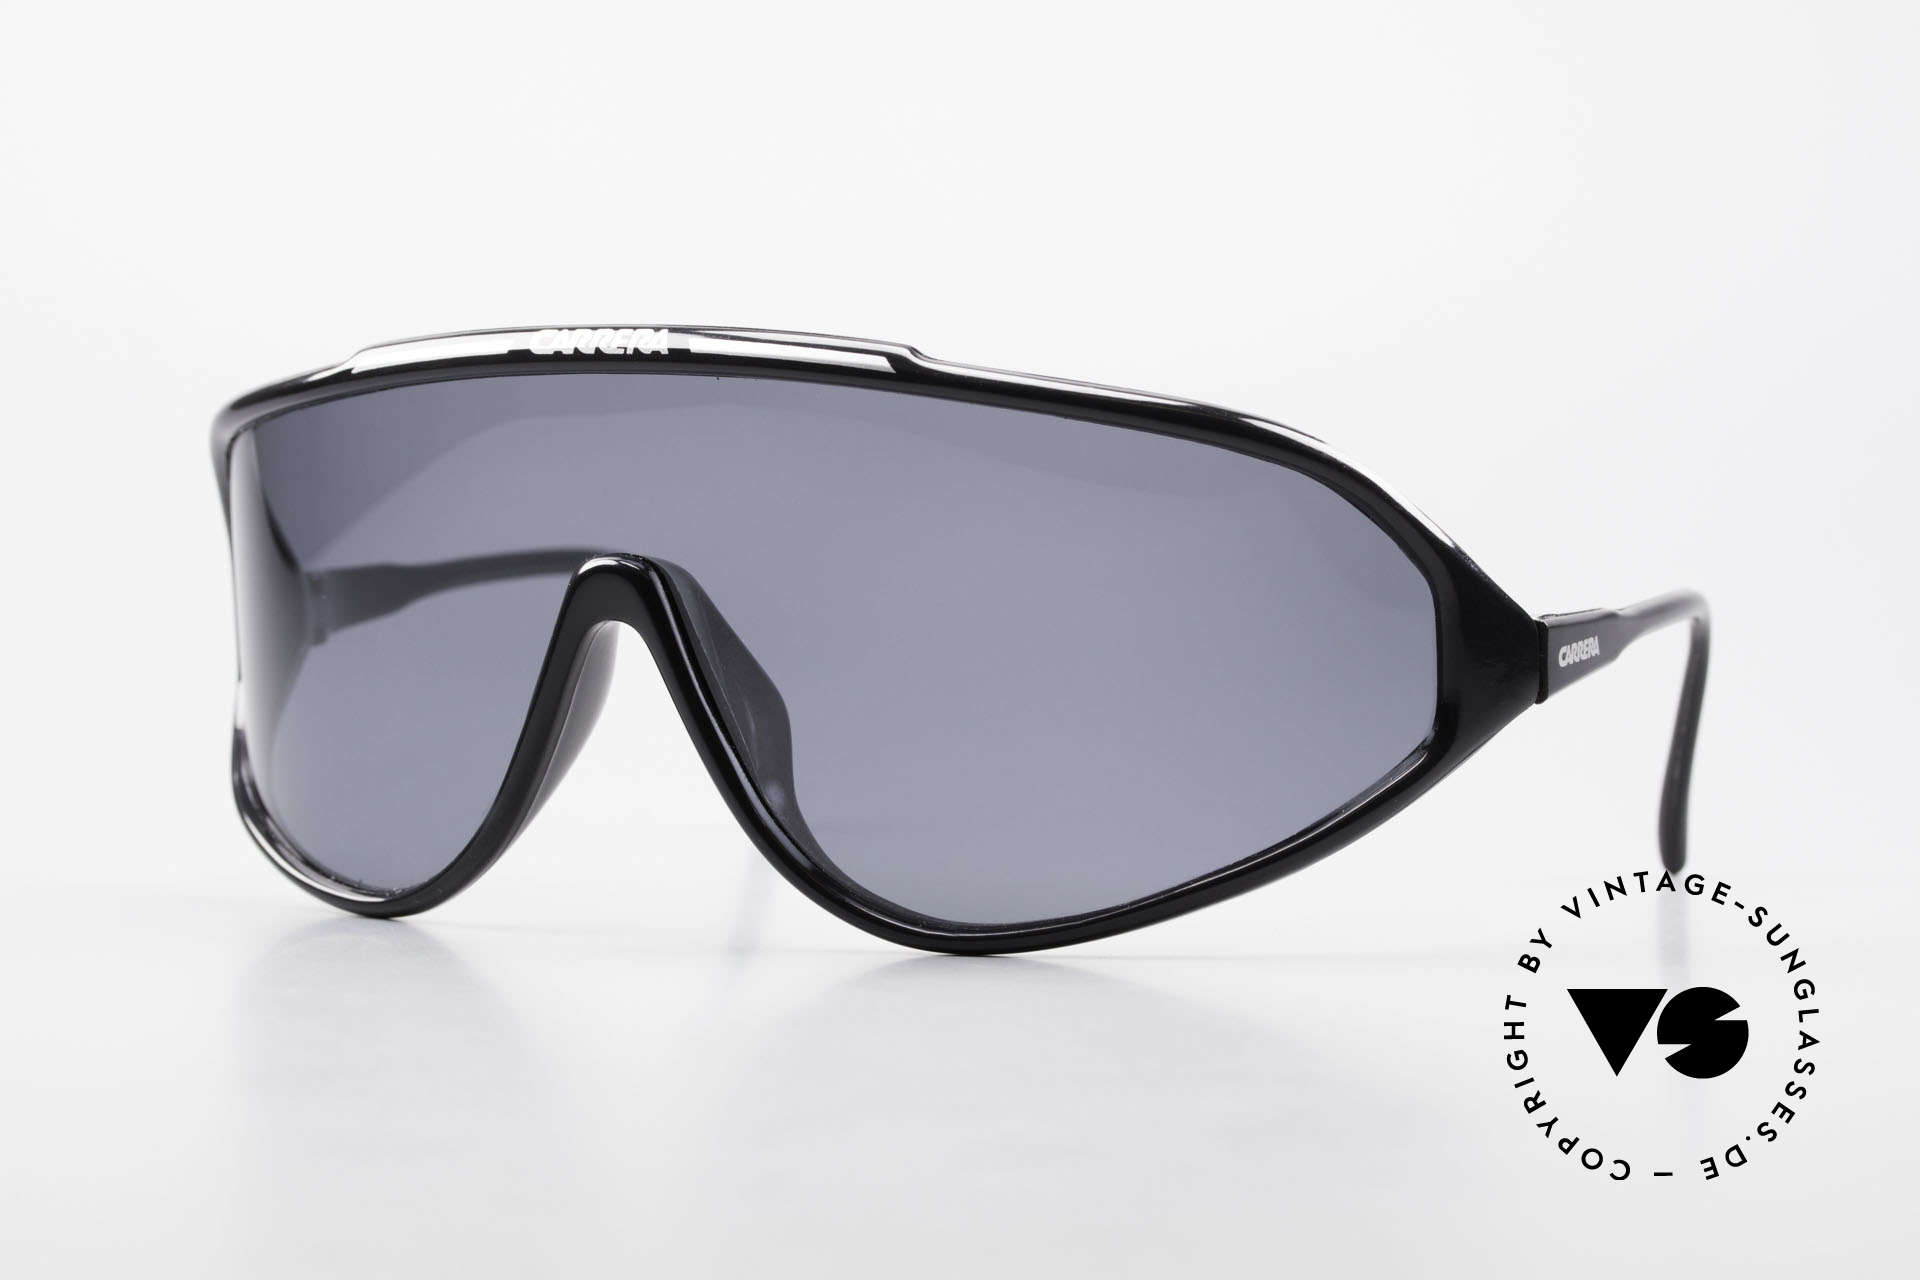 Sunglasses Carrera 5430 90's Sports Shades Polarized